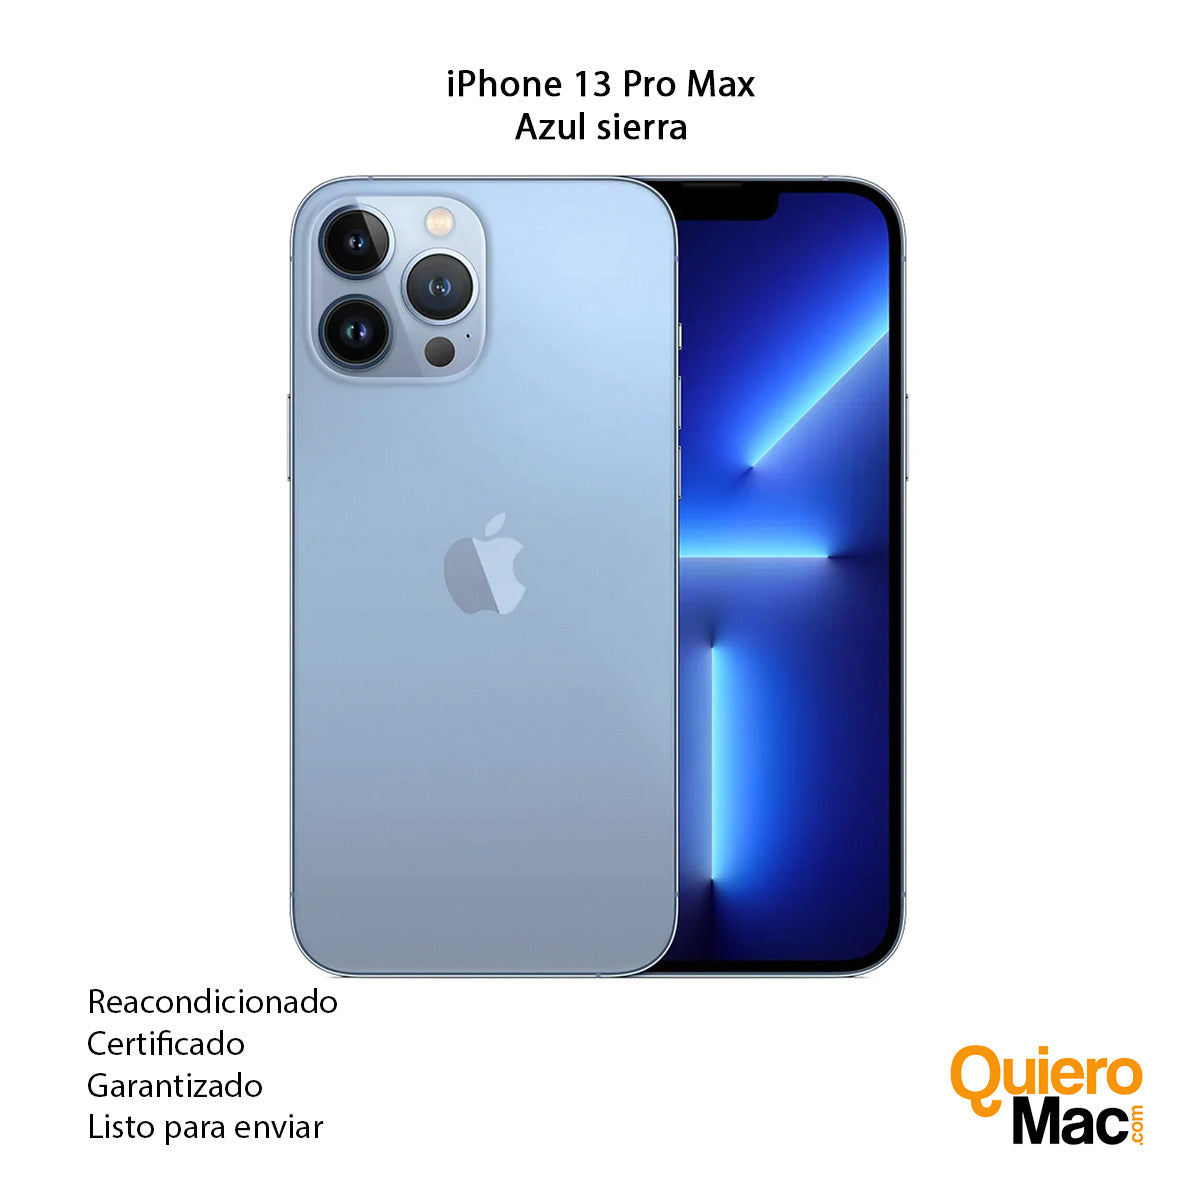 iPhone 13 Pro Max Reacondicionado 128GB a 256GB con Garantía de 1